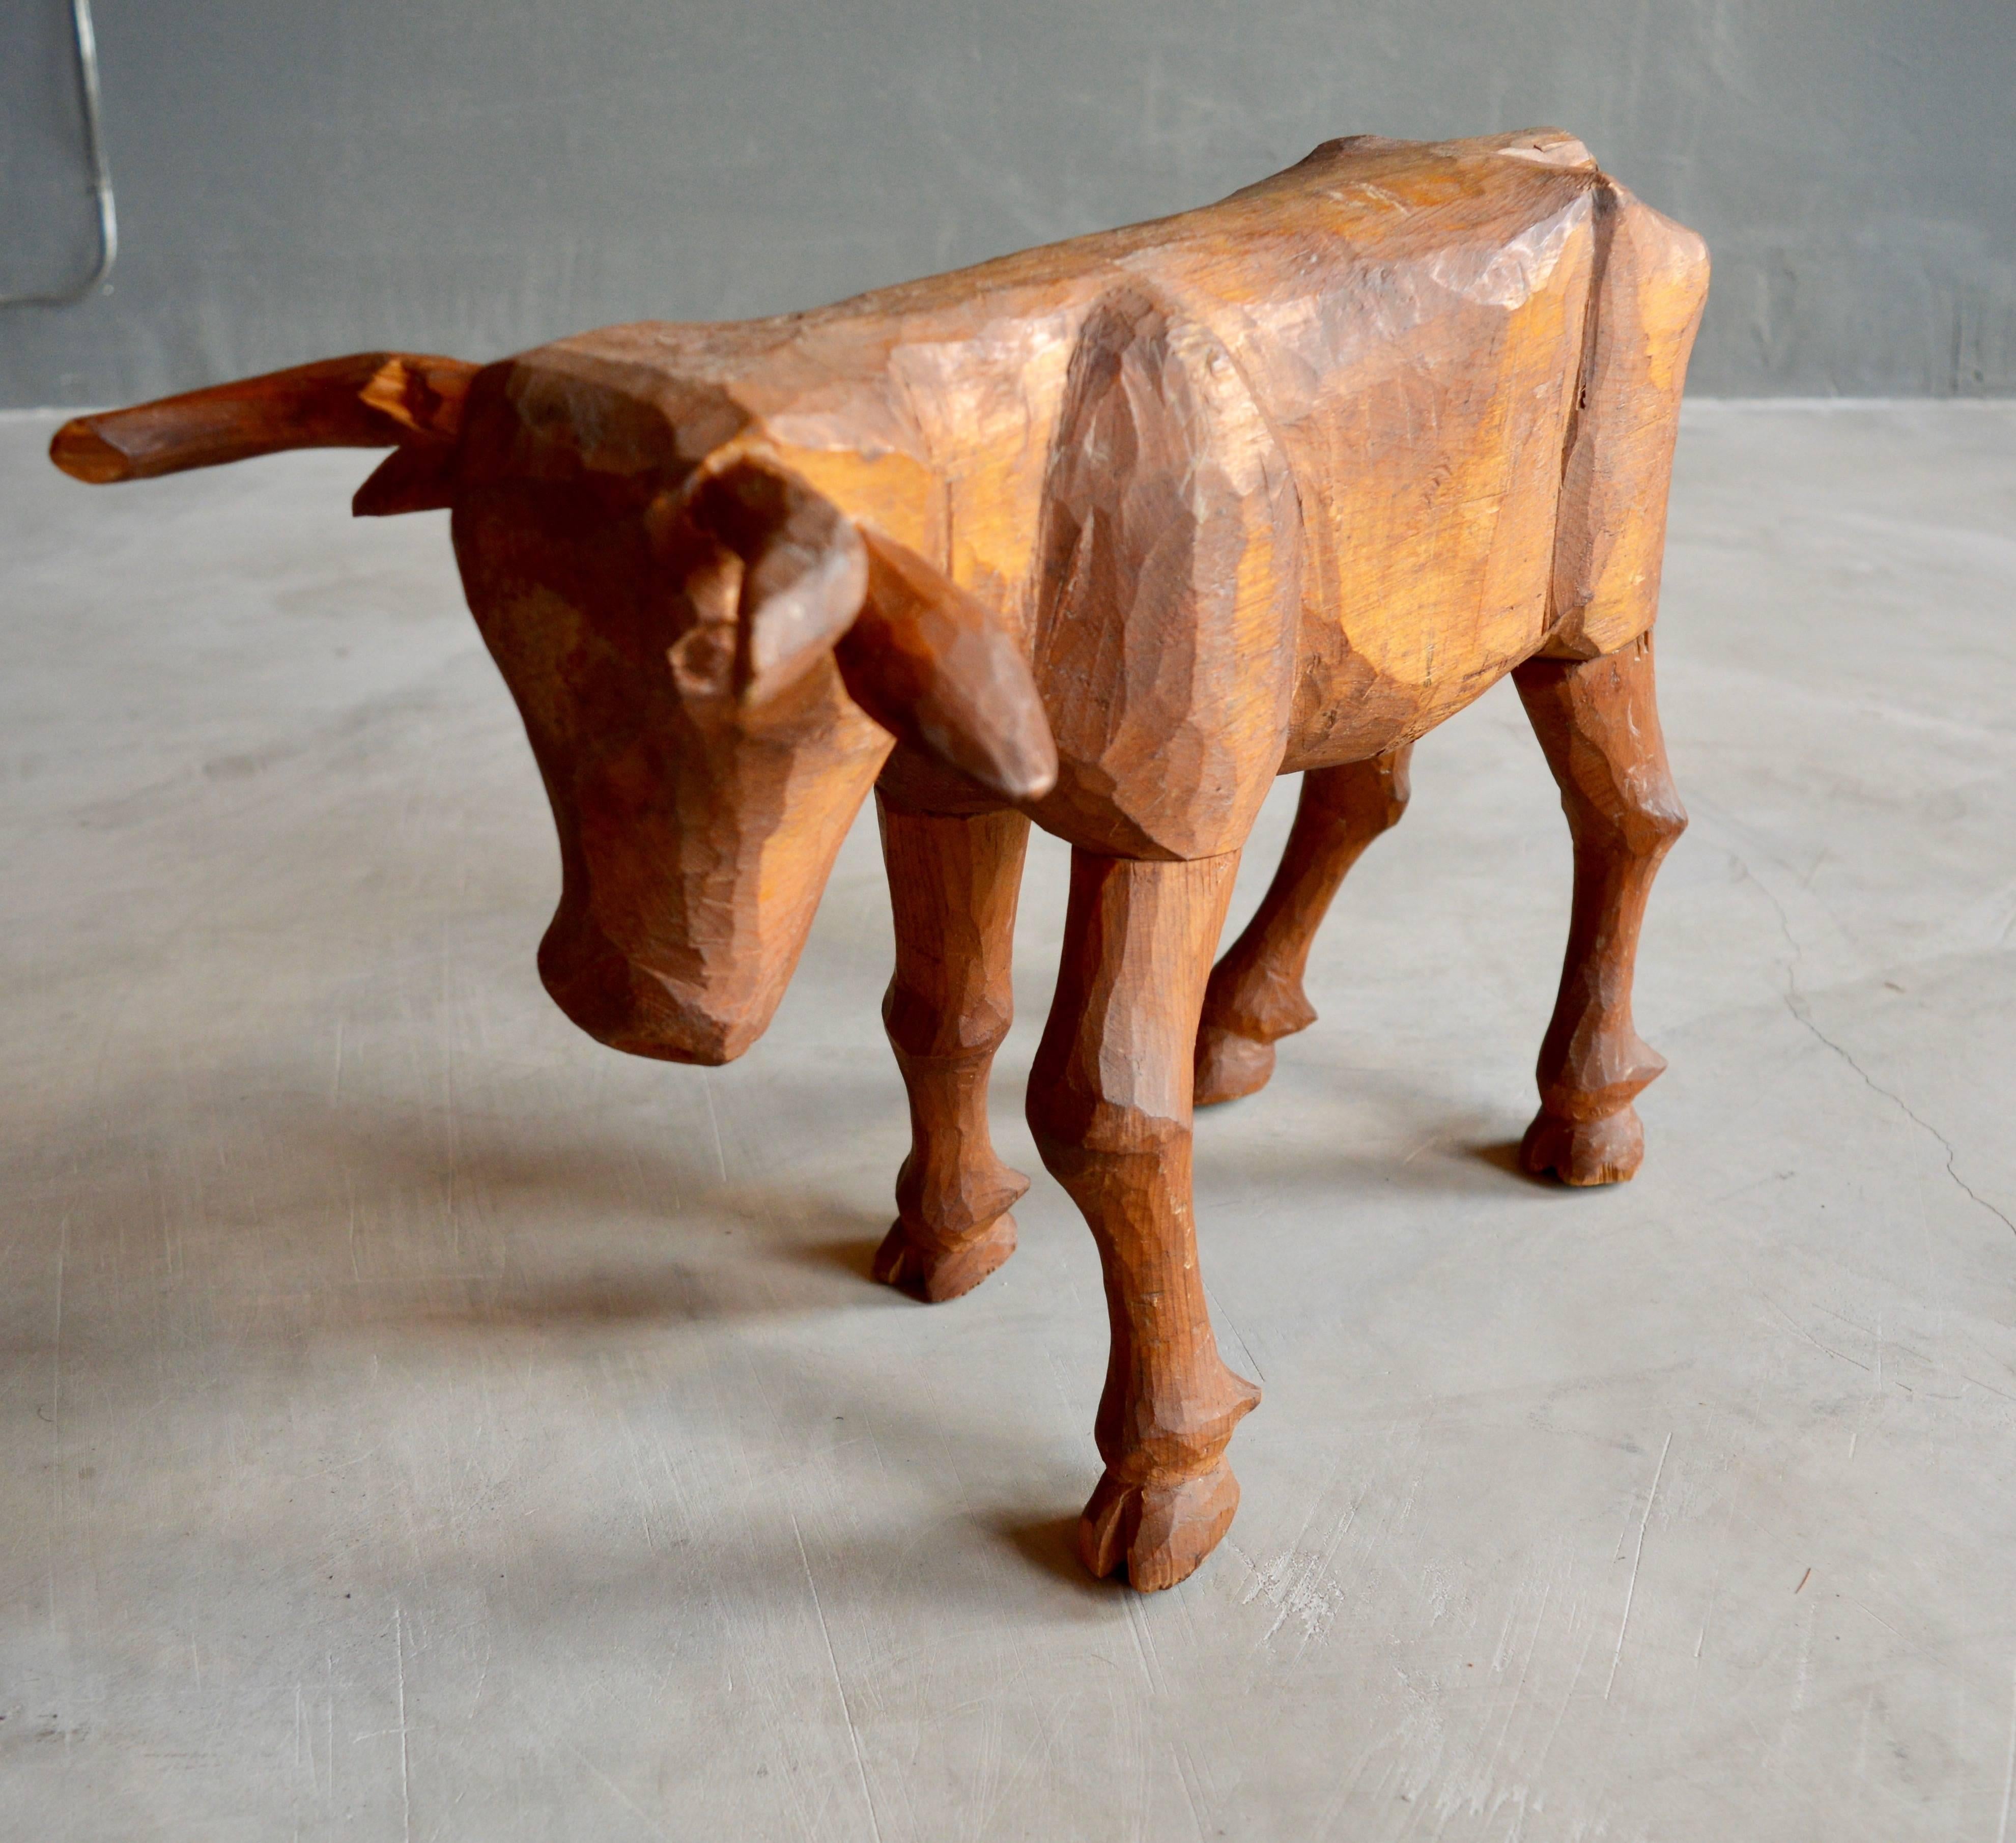 Primitiver handgeschnitzter Folk Art Stier aus Holz. Großartige Handarbeit und Maßstab. Ein Horn hat einen Chip. Großartiges skulpturales Stück.